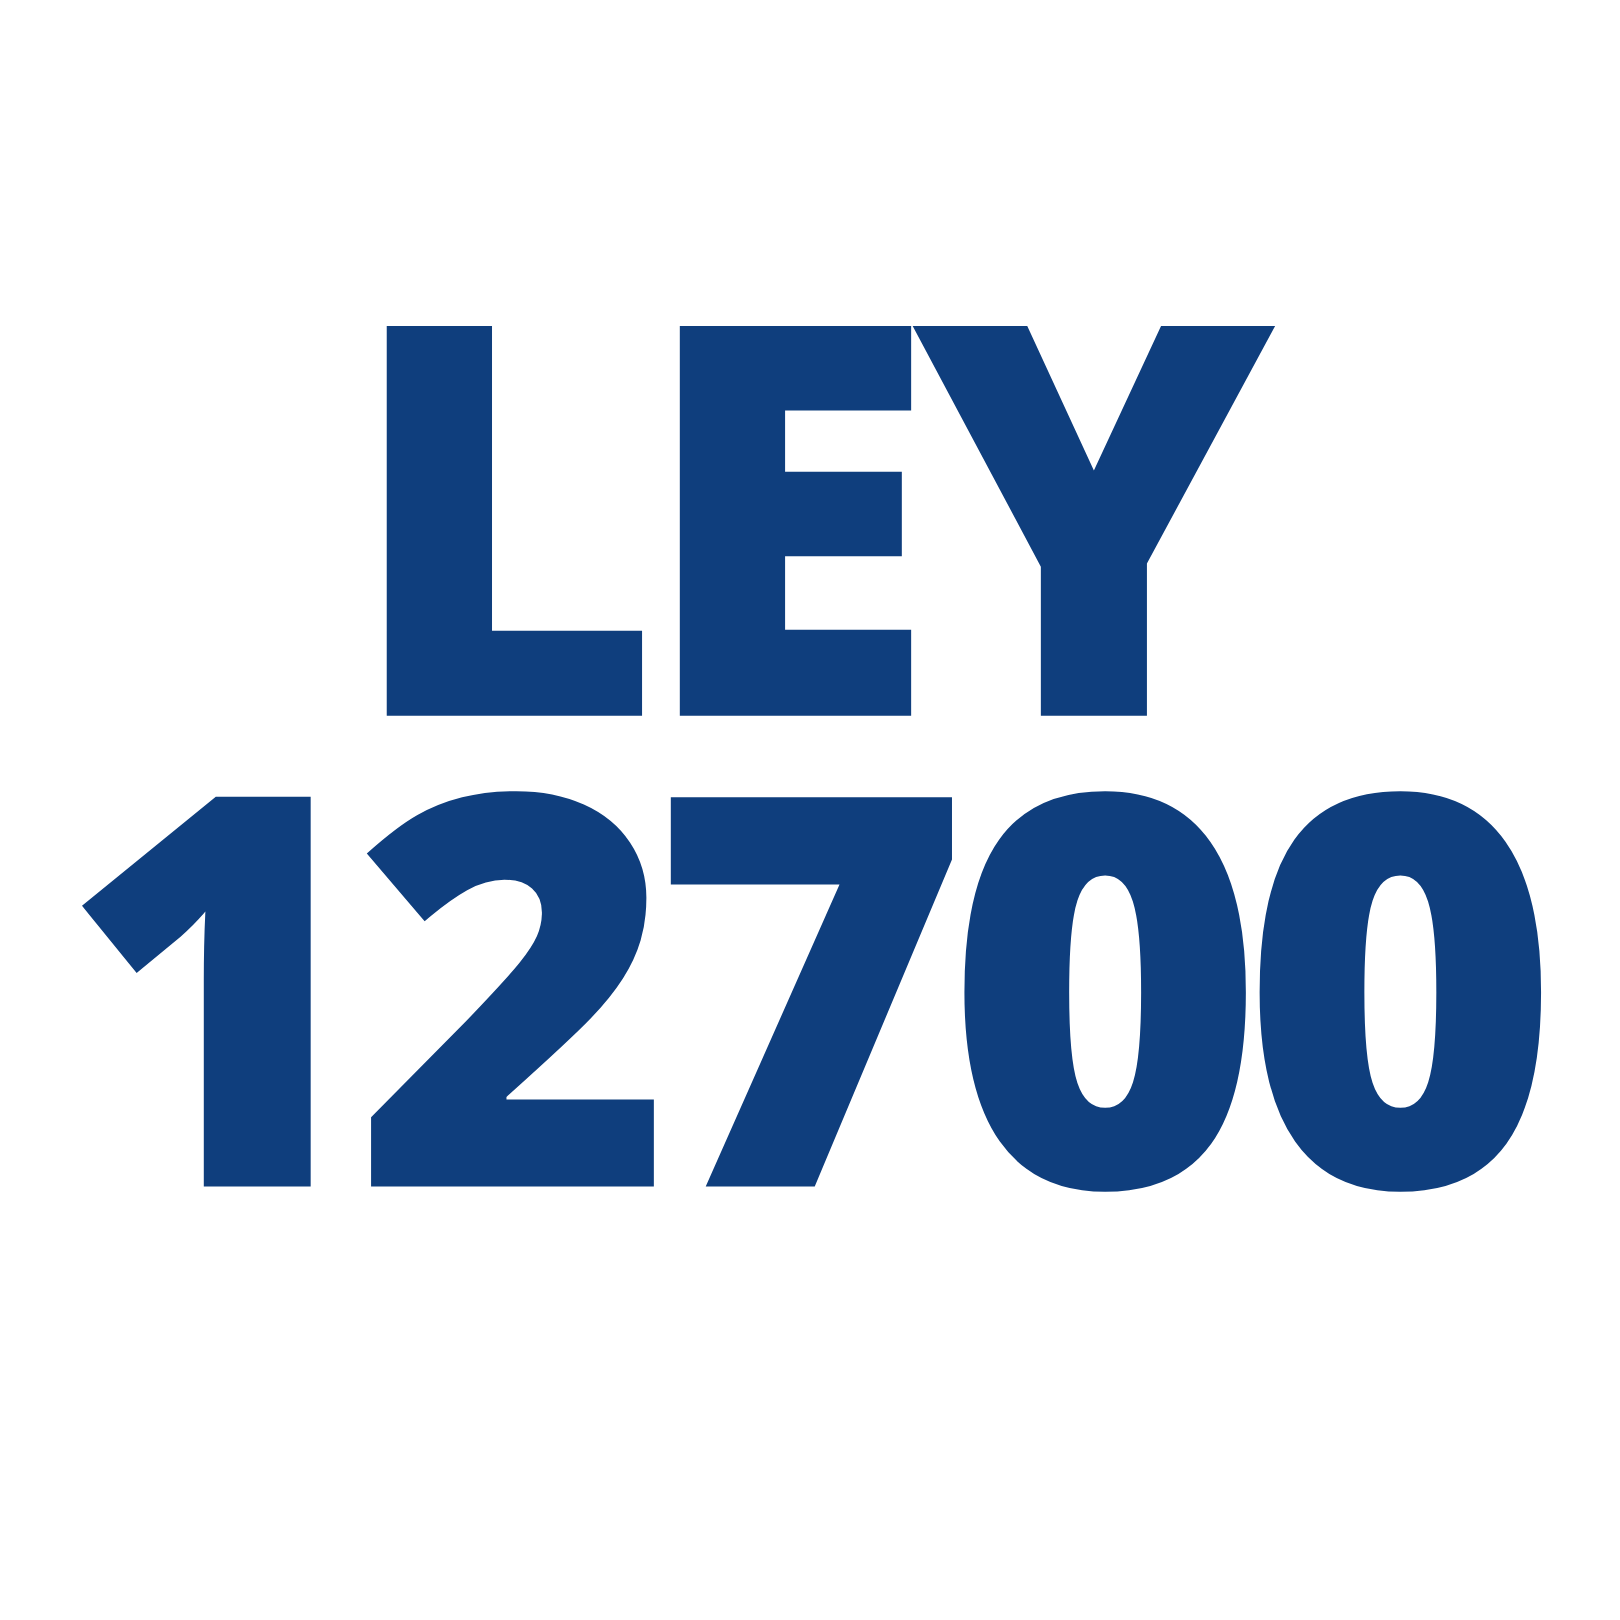 Ley 121700